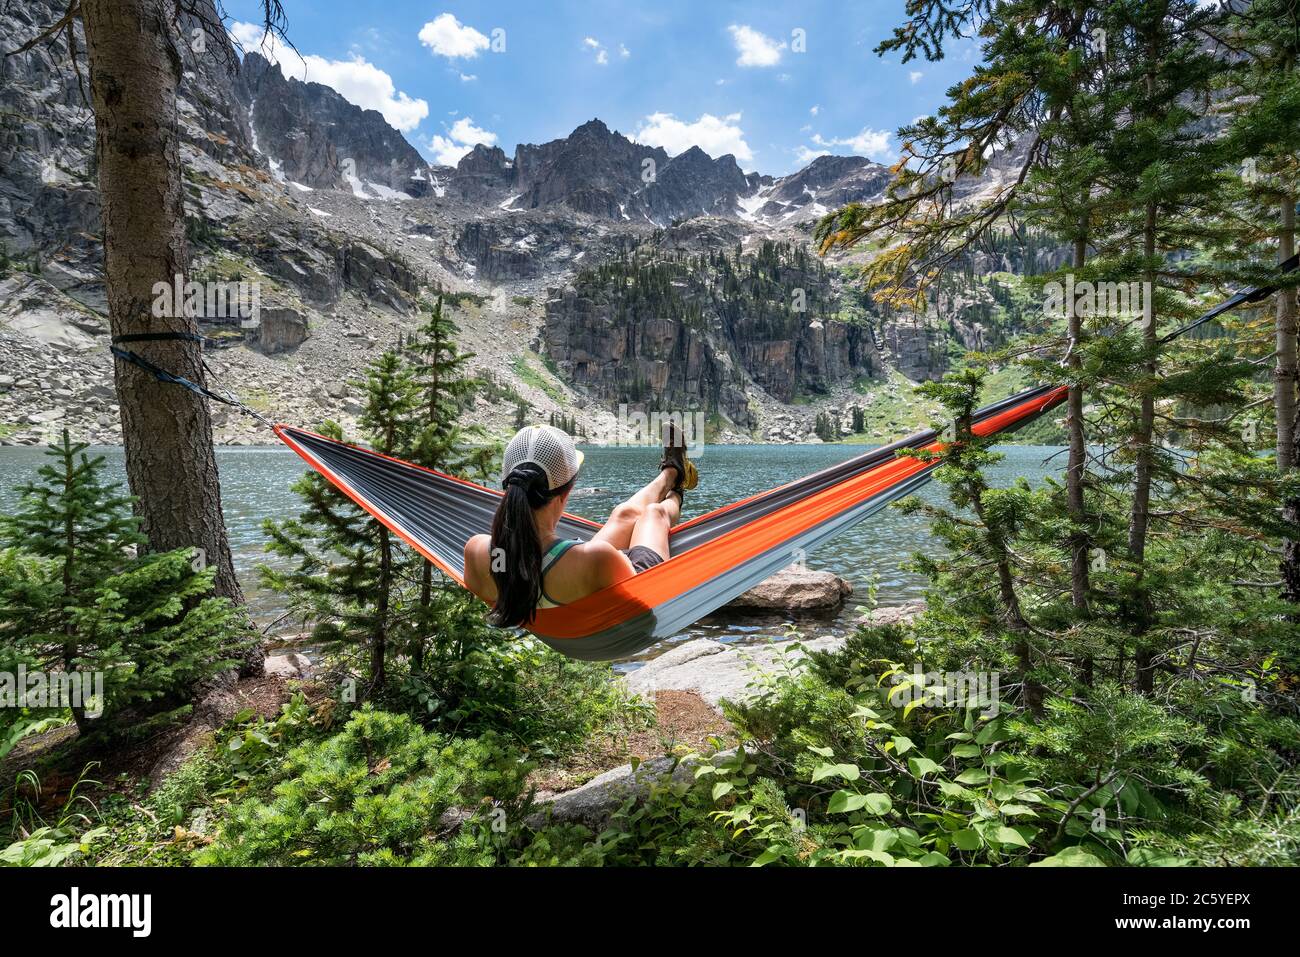 Rilassati in un'amaca al Crater Lake, Granby Colorado USA Foto Stock